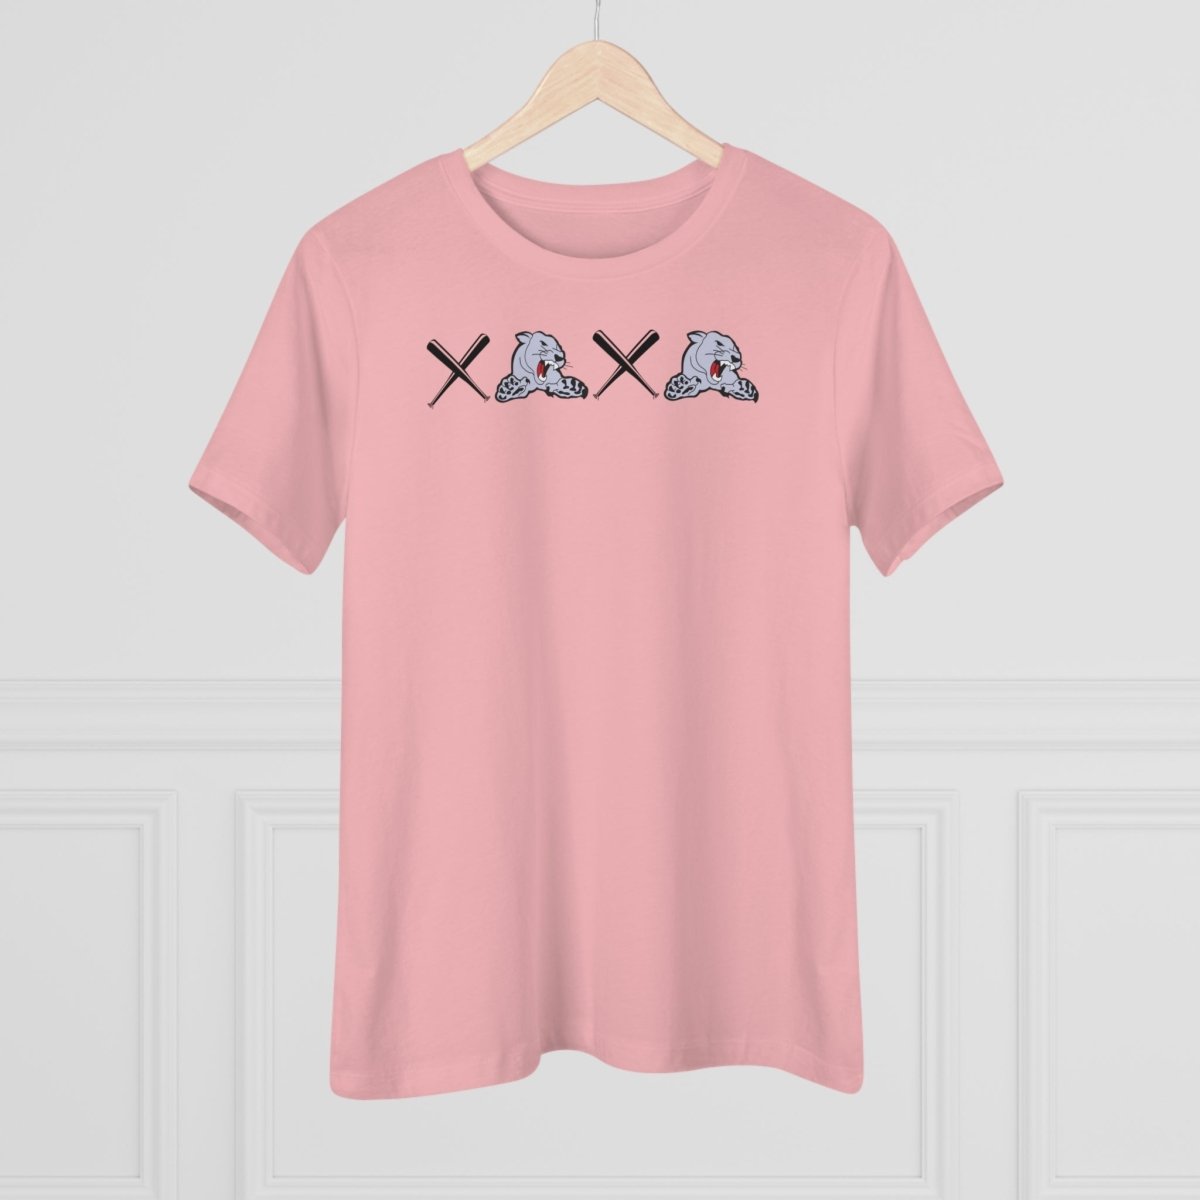 Cougar XO XO Women's Relaxed T-Shirt